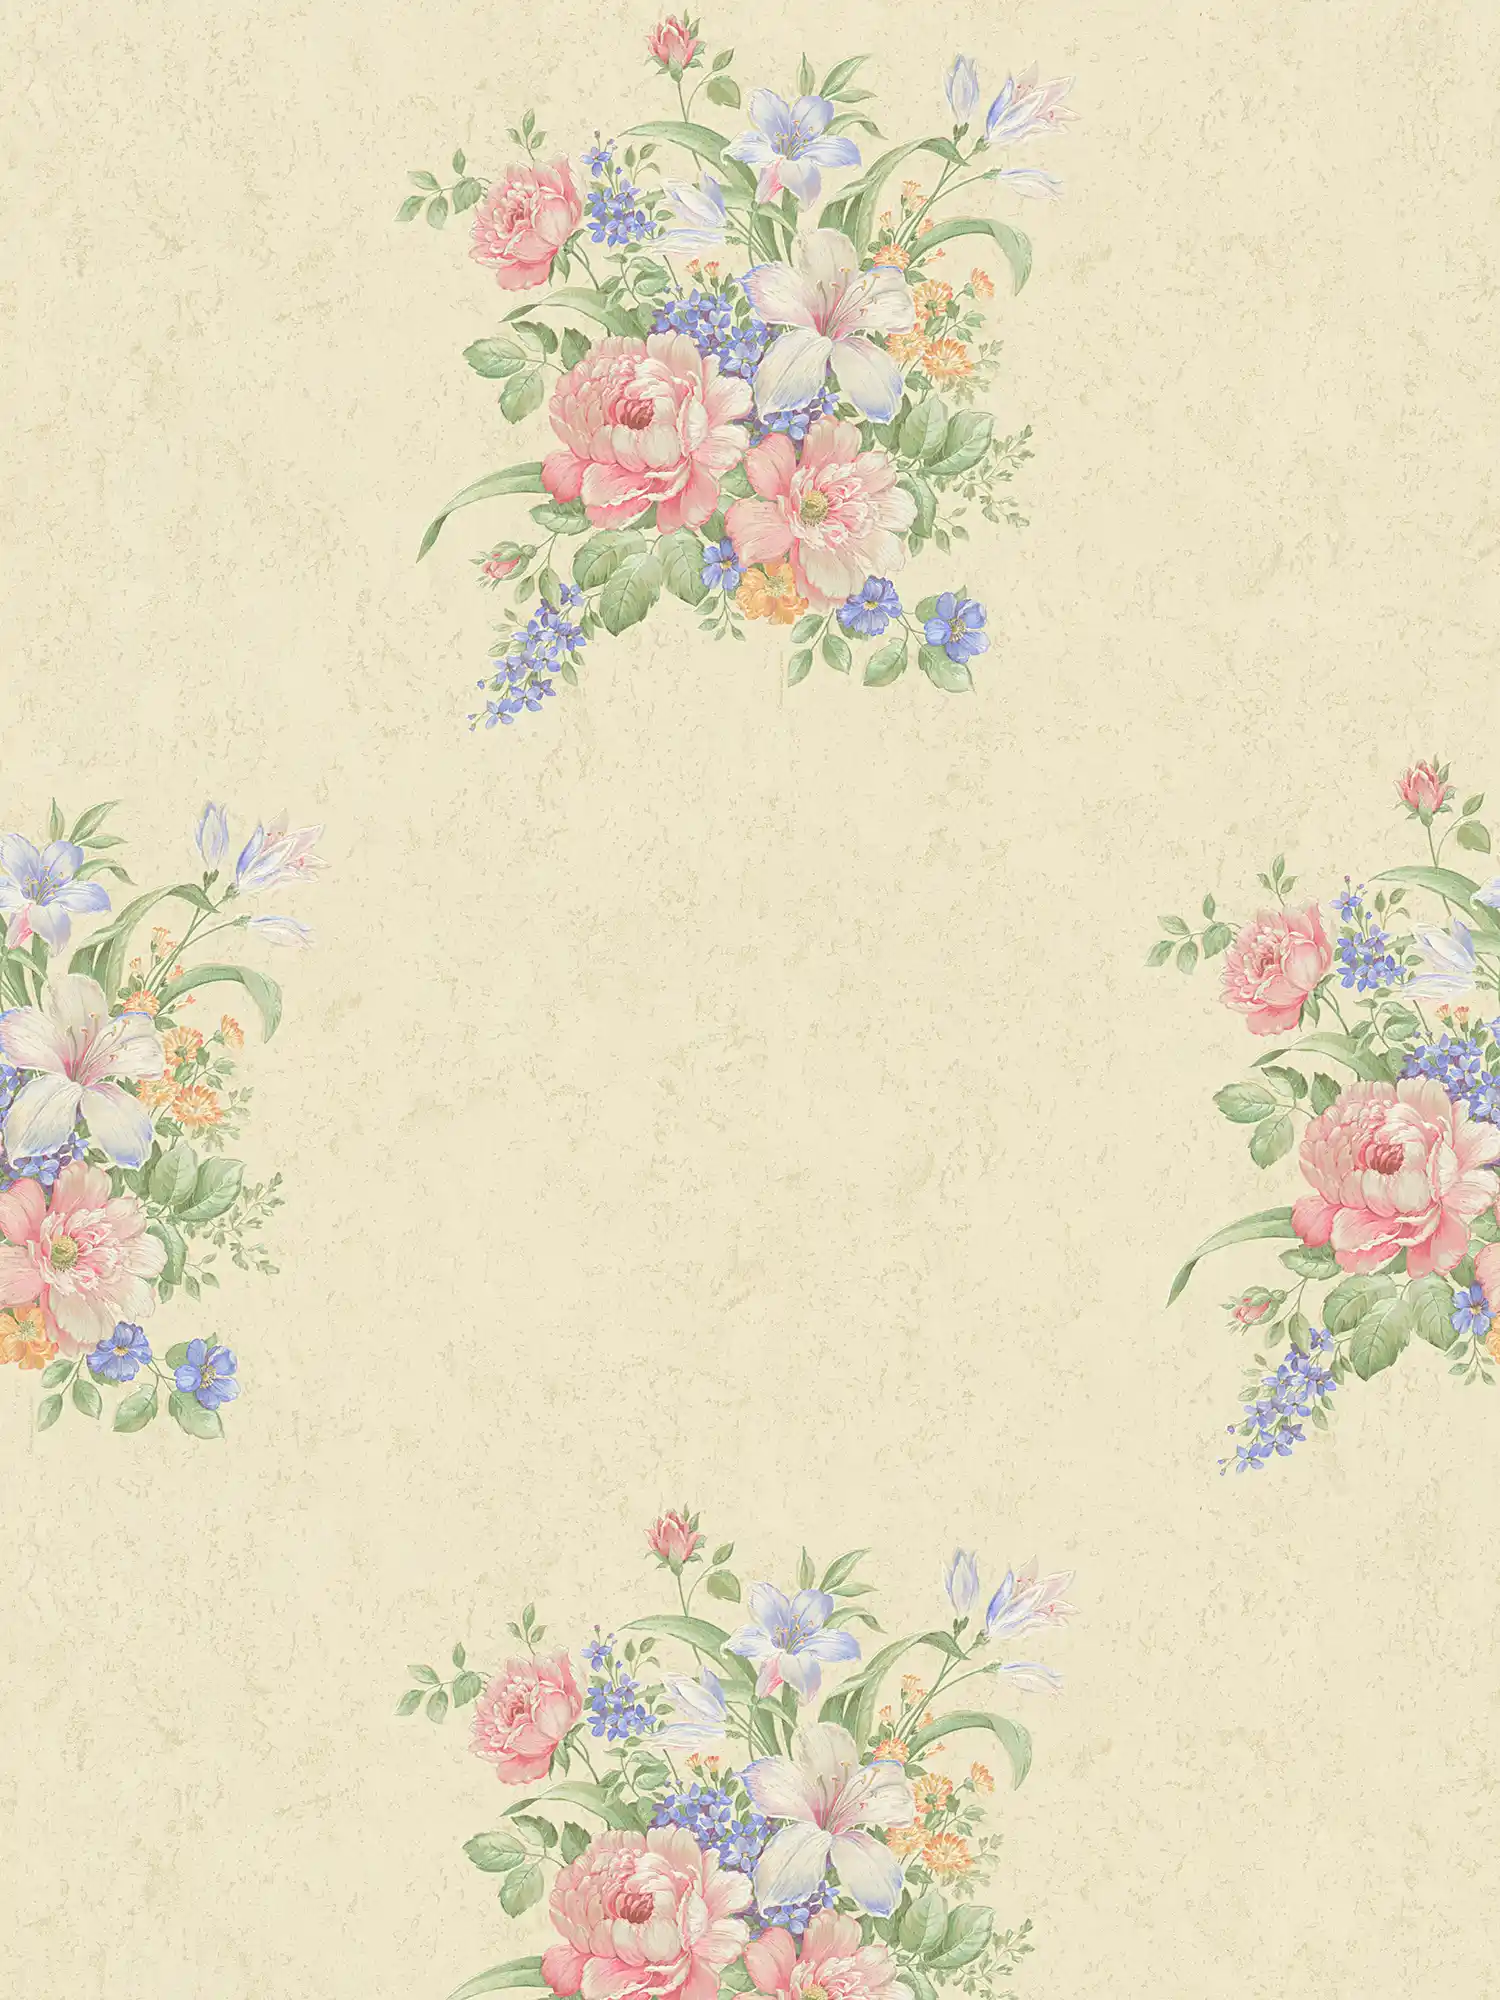         Vliesbehang bloemornamenten & structuurpatroon - crème, groen, roze
    